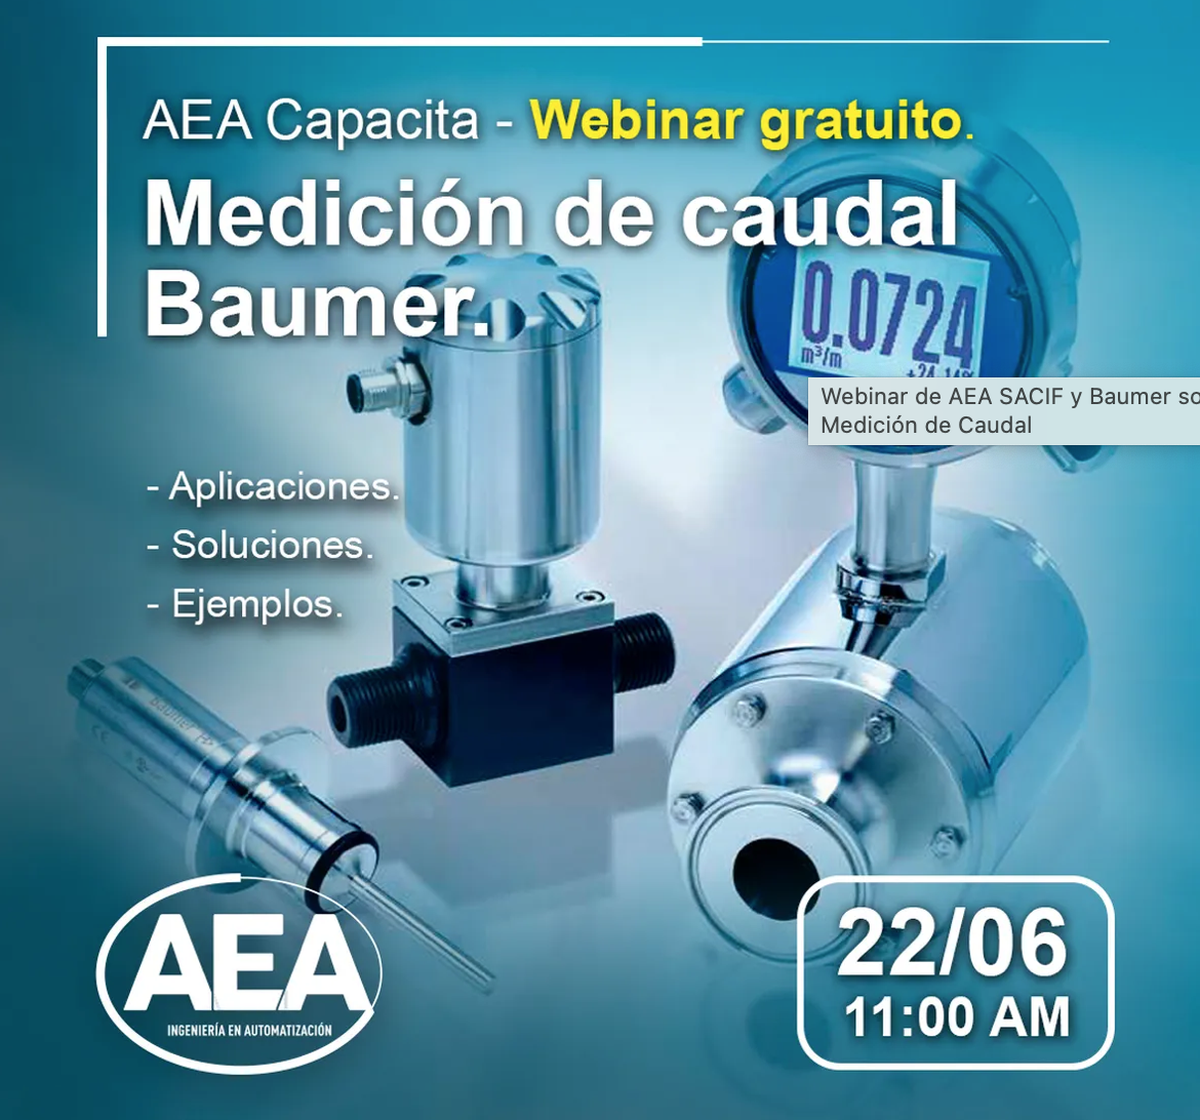 Webinar de AEA SACIF y Baumer sobre Medición de Caudal